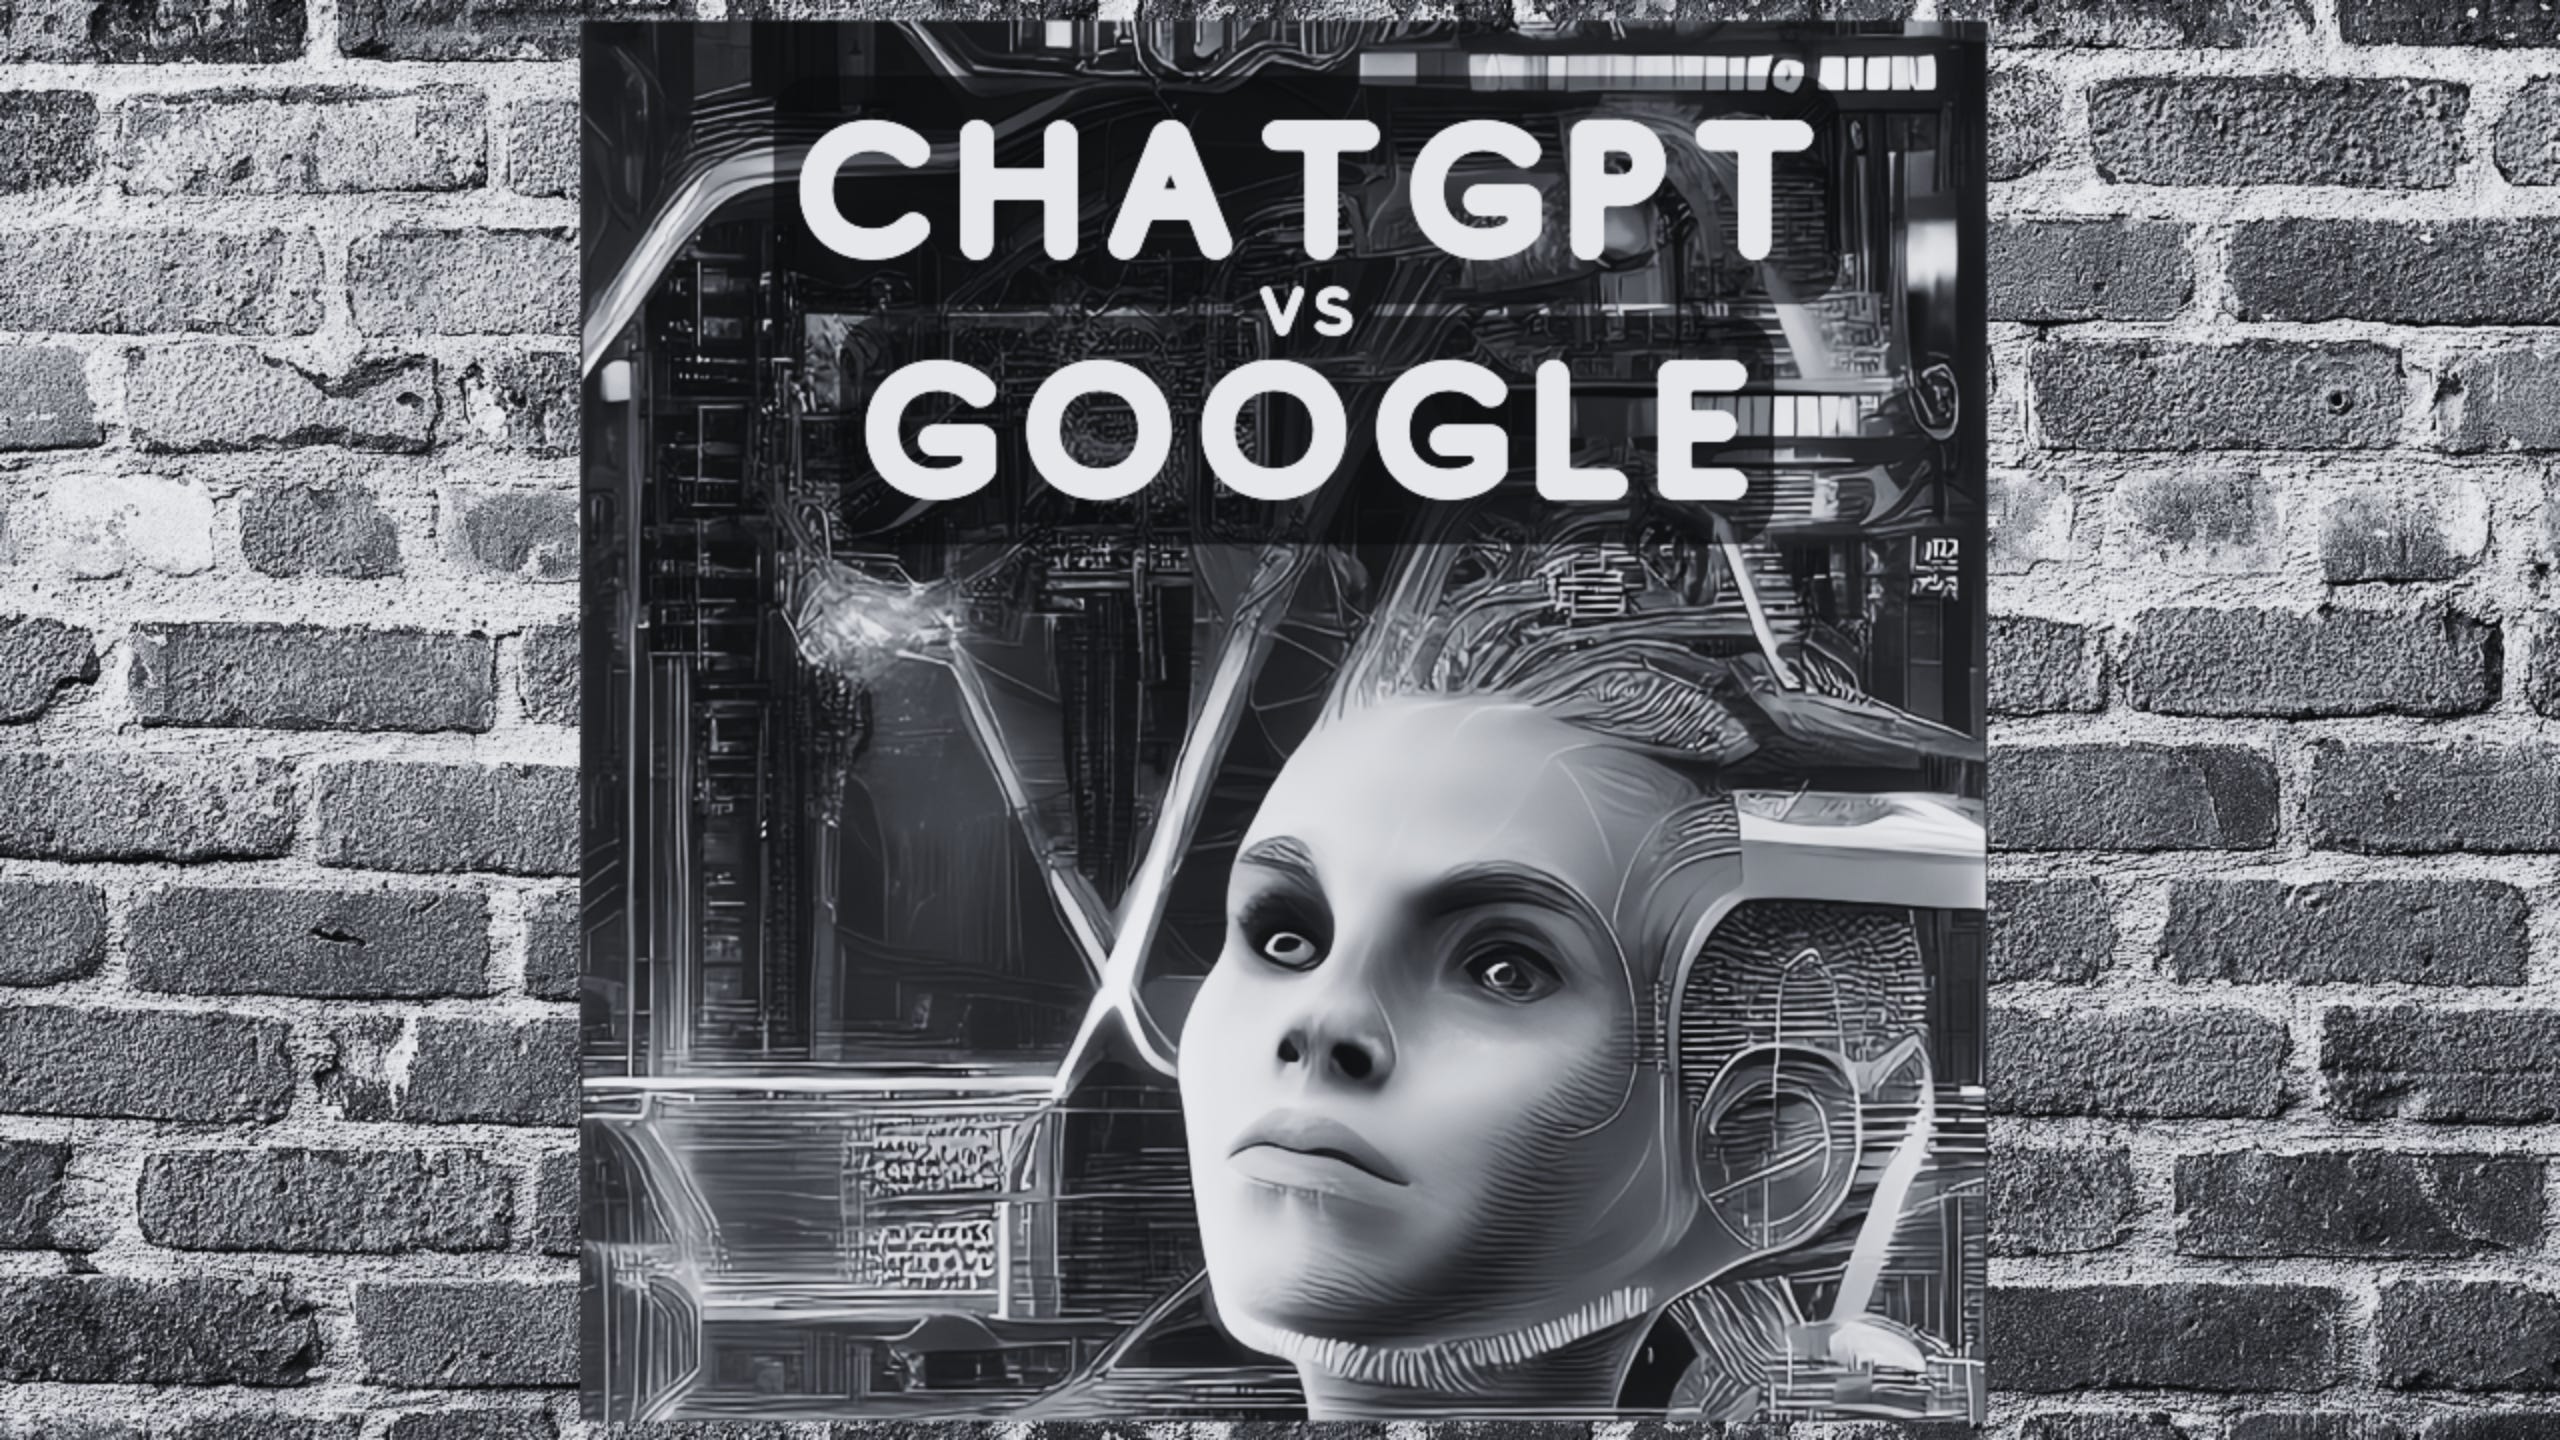 Ist die ChatGPT AI der ultimative Google Killer?